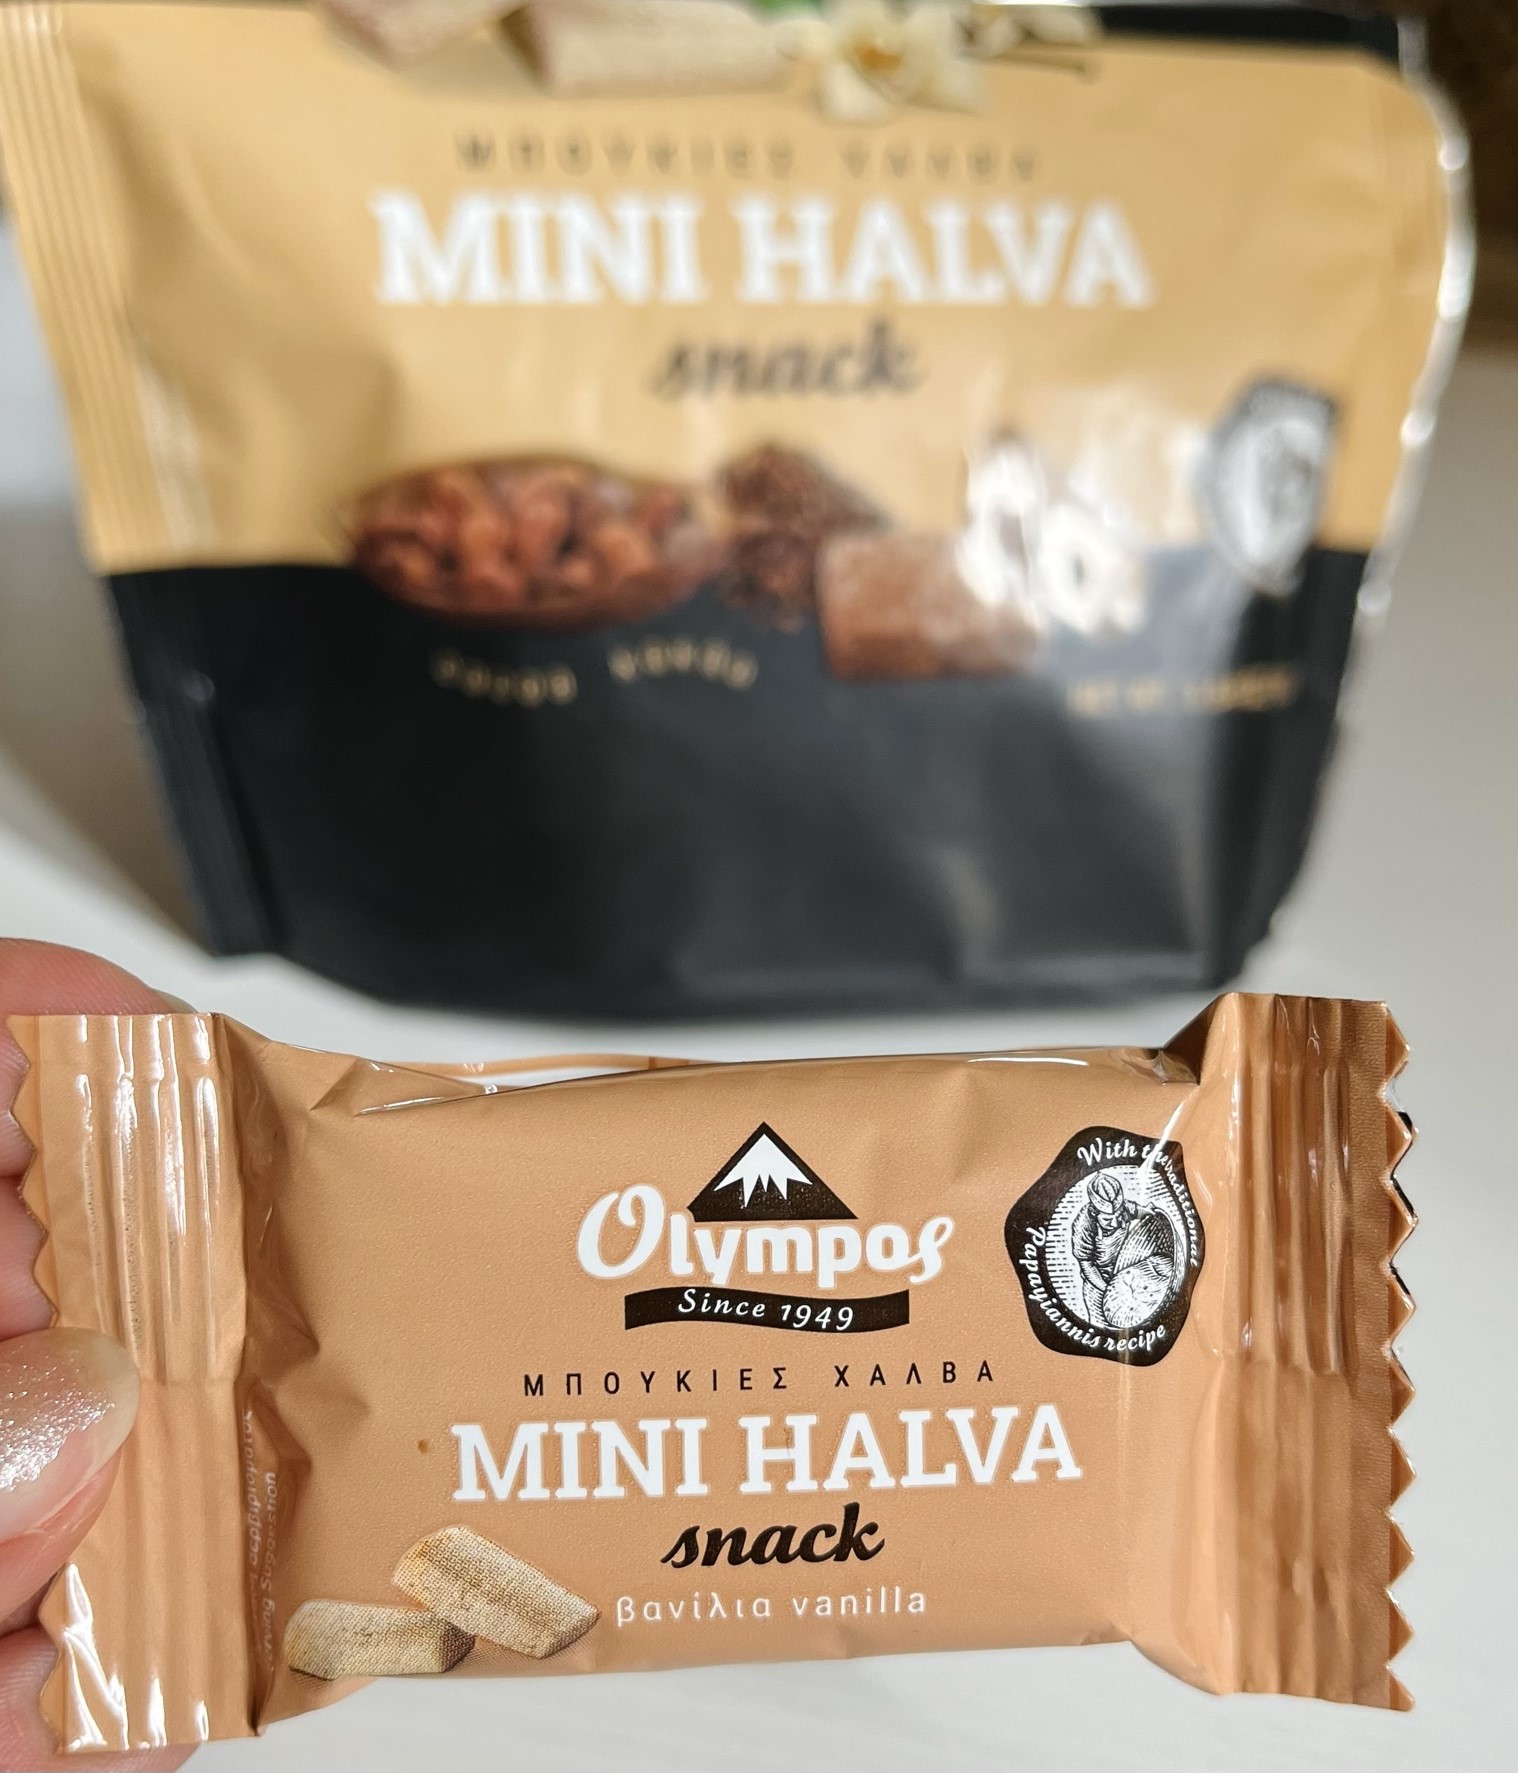 halva snack found in a shop in Rhodes